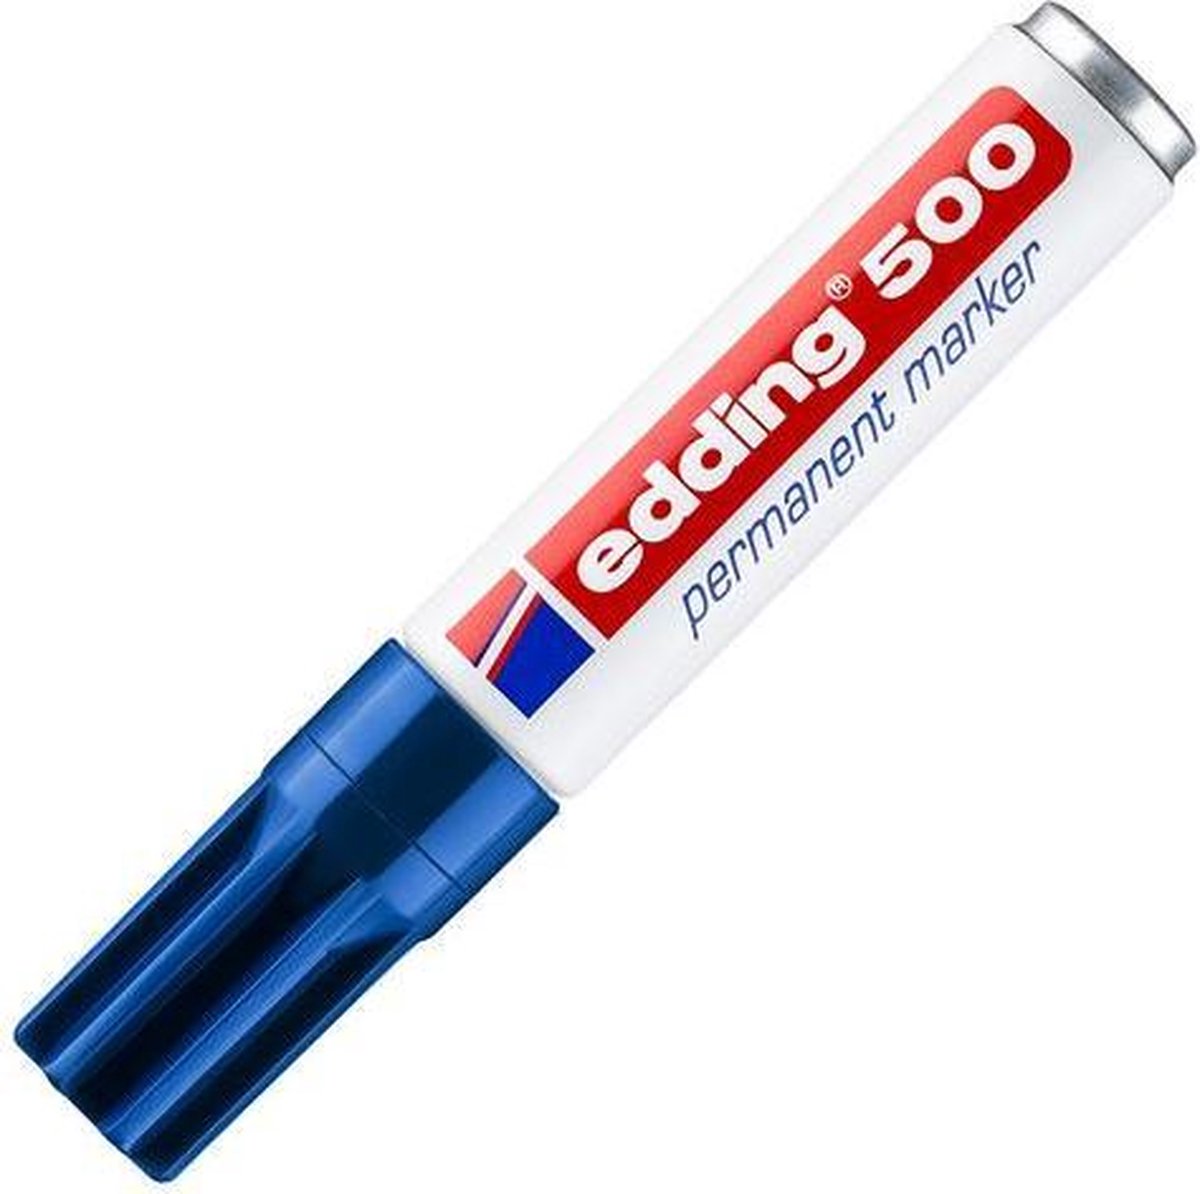 Viltstift edding 500 schuin blauw 2-7mm - 10 stuks - 10 stuks